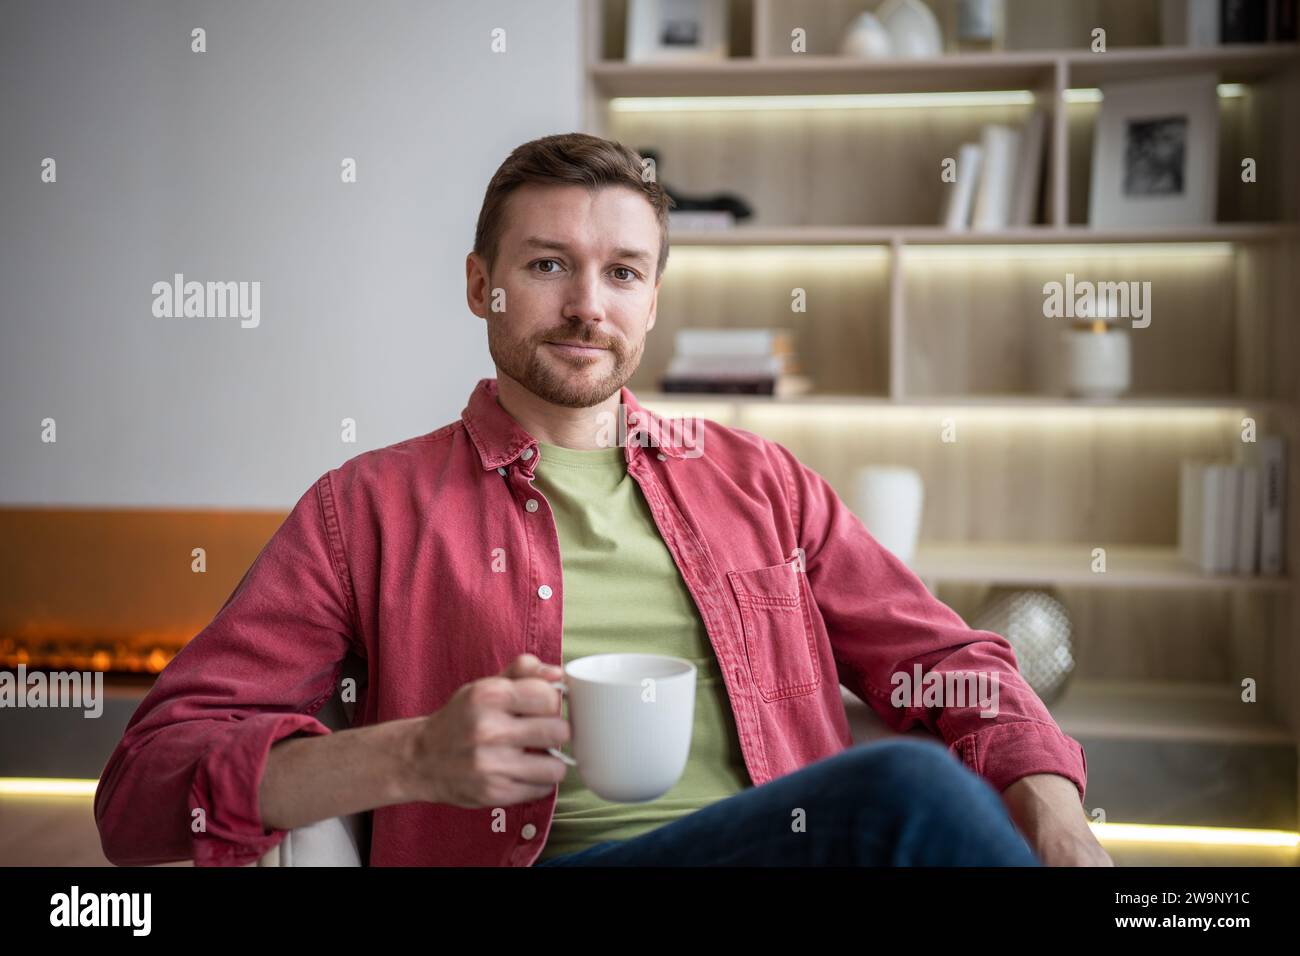 Felice uomo sorridente seduto in un accogliente appartamento con una tazza di tè, bevendo, riposando, guardando la macchina fotografica Foto Stock